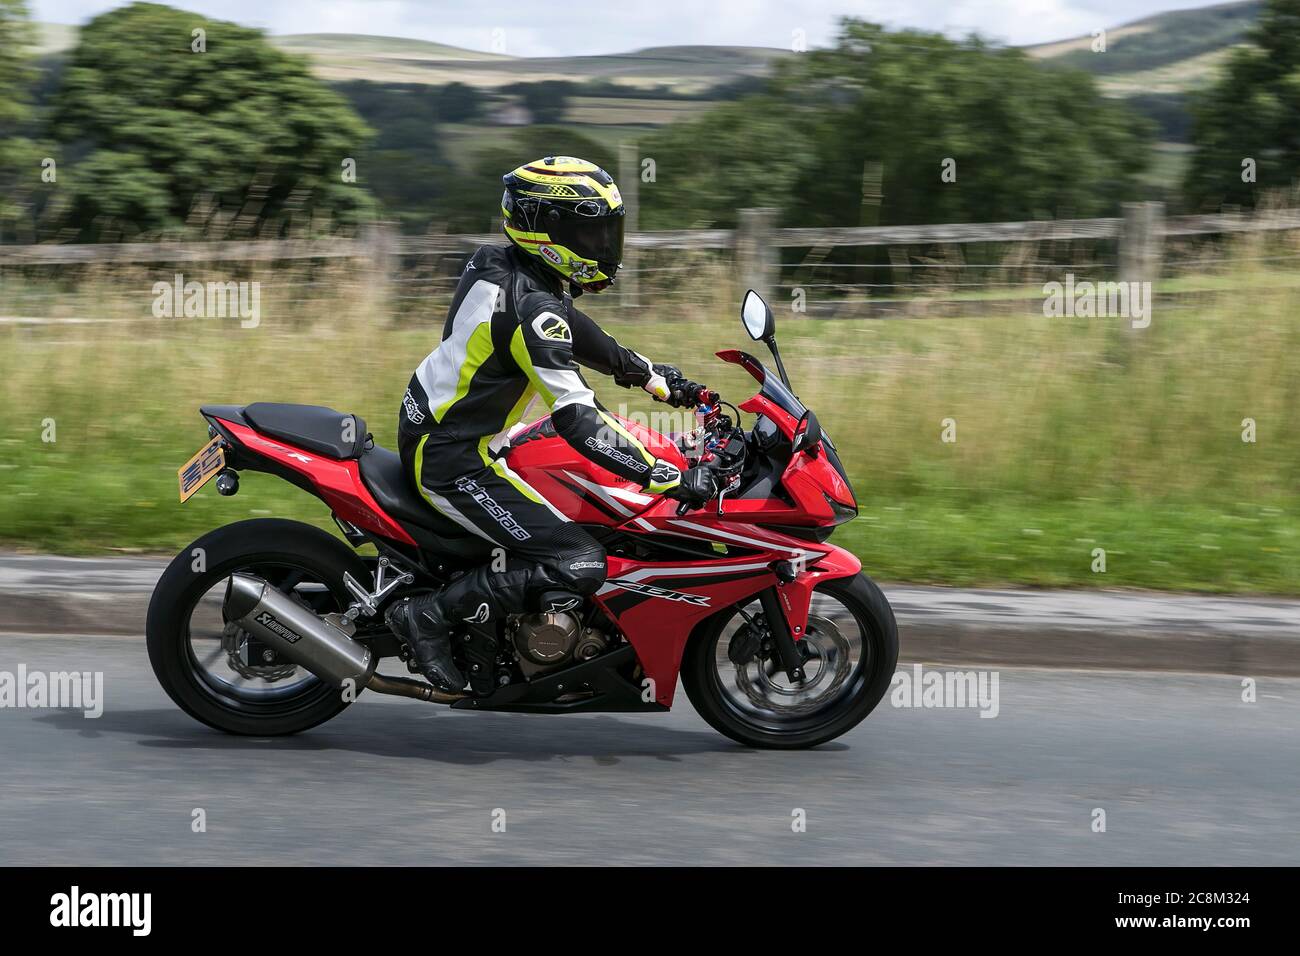 Red Honda CBR Motorbike rider ; transport à deux roues, motos, véhicule, routes, motos, motocyclistes qui conduisent à Chorley, Royaume-Uni Banque D'Images